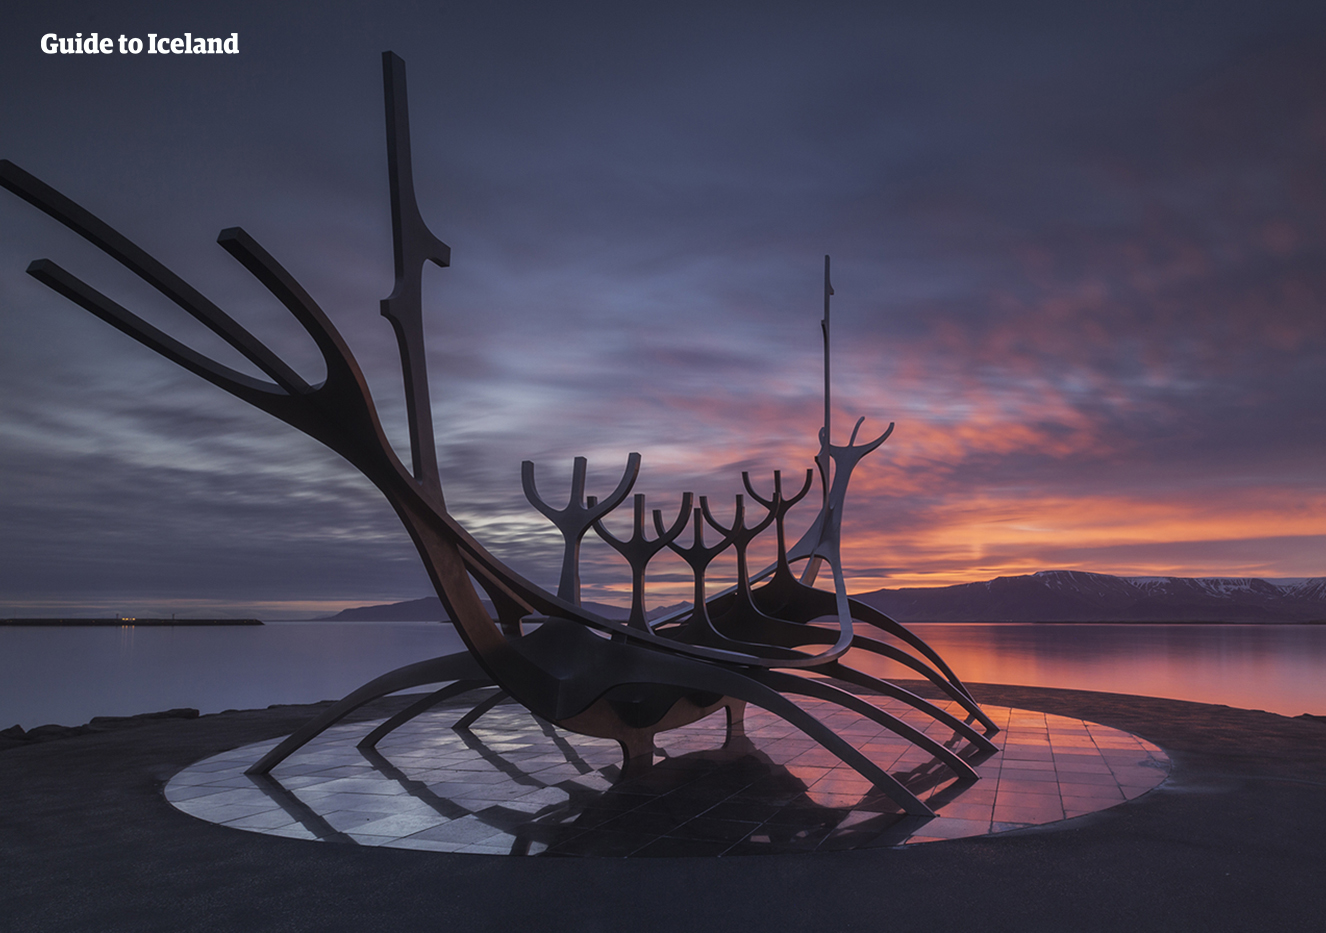 Zobacz jak słońce kryje się za górą Esja z perspektywy słynnej rzeźby w centrum Reykjaviku.